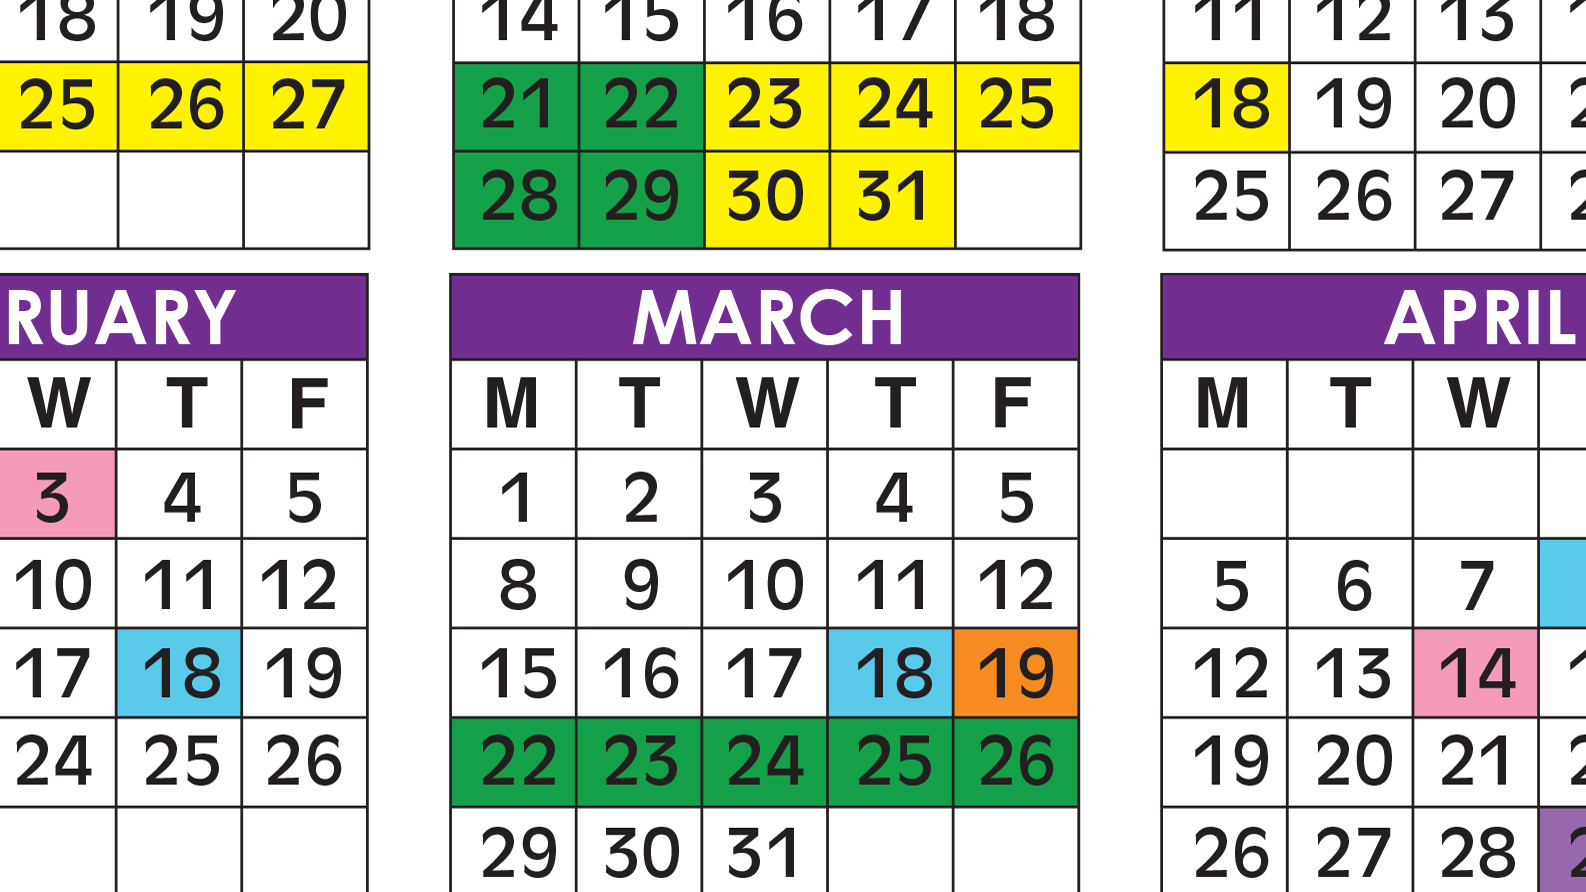 Broward School Calendar 2021-22 Official 2020/21 Broward County Public Schools Color Calendar 